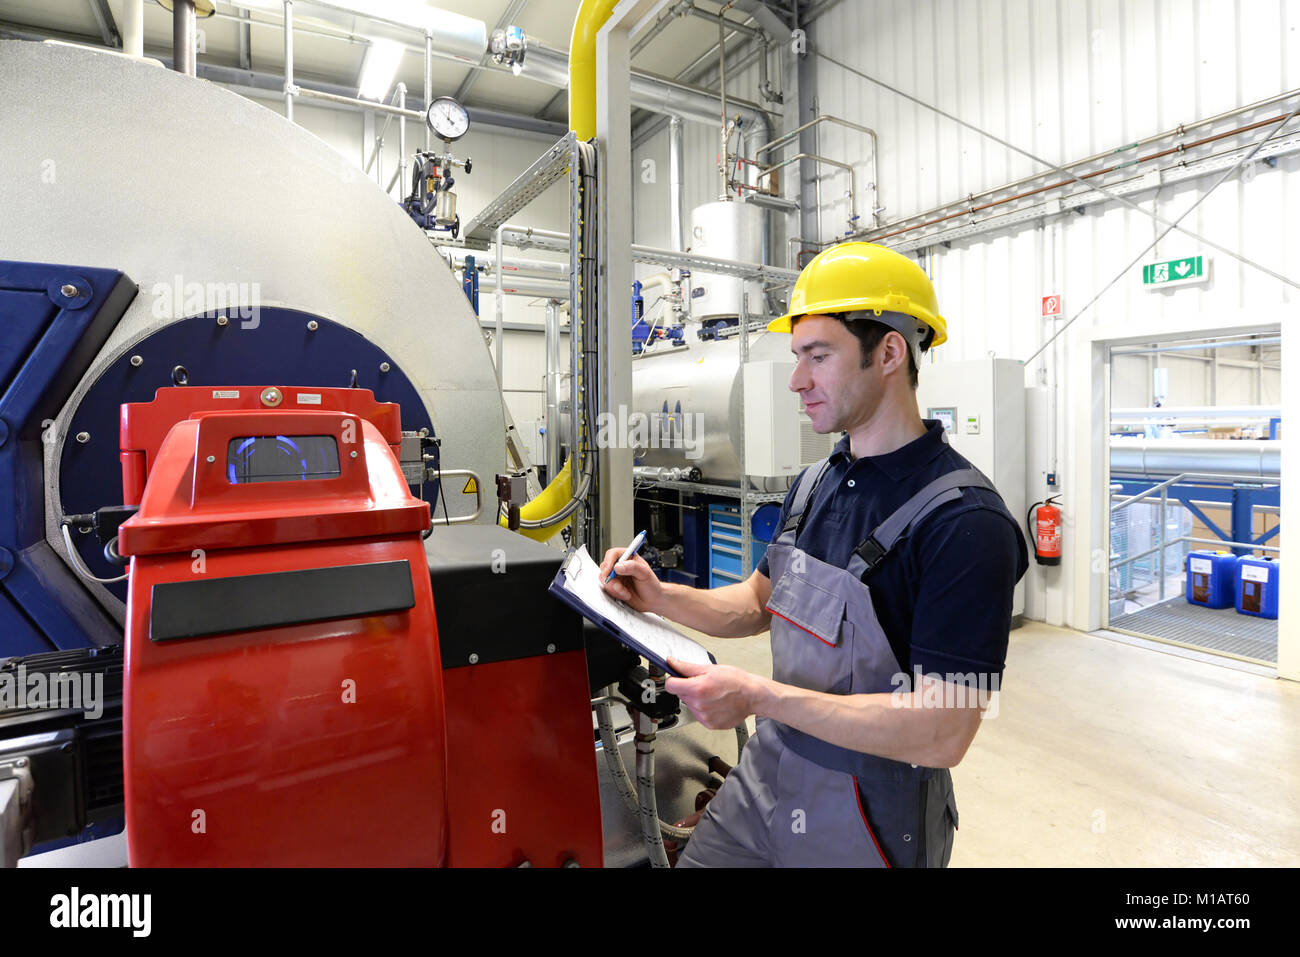 Arbeitnehmer in einer industriellen Anlage prüfen die Systeme mit moderner Technologie Stockfoto